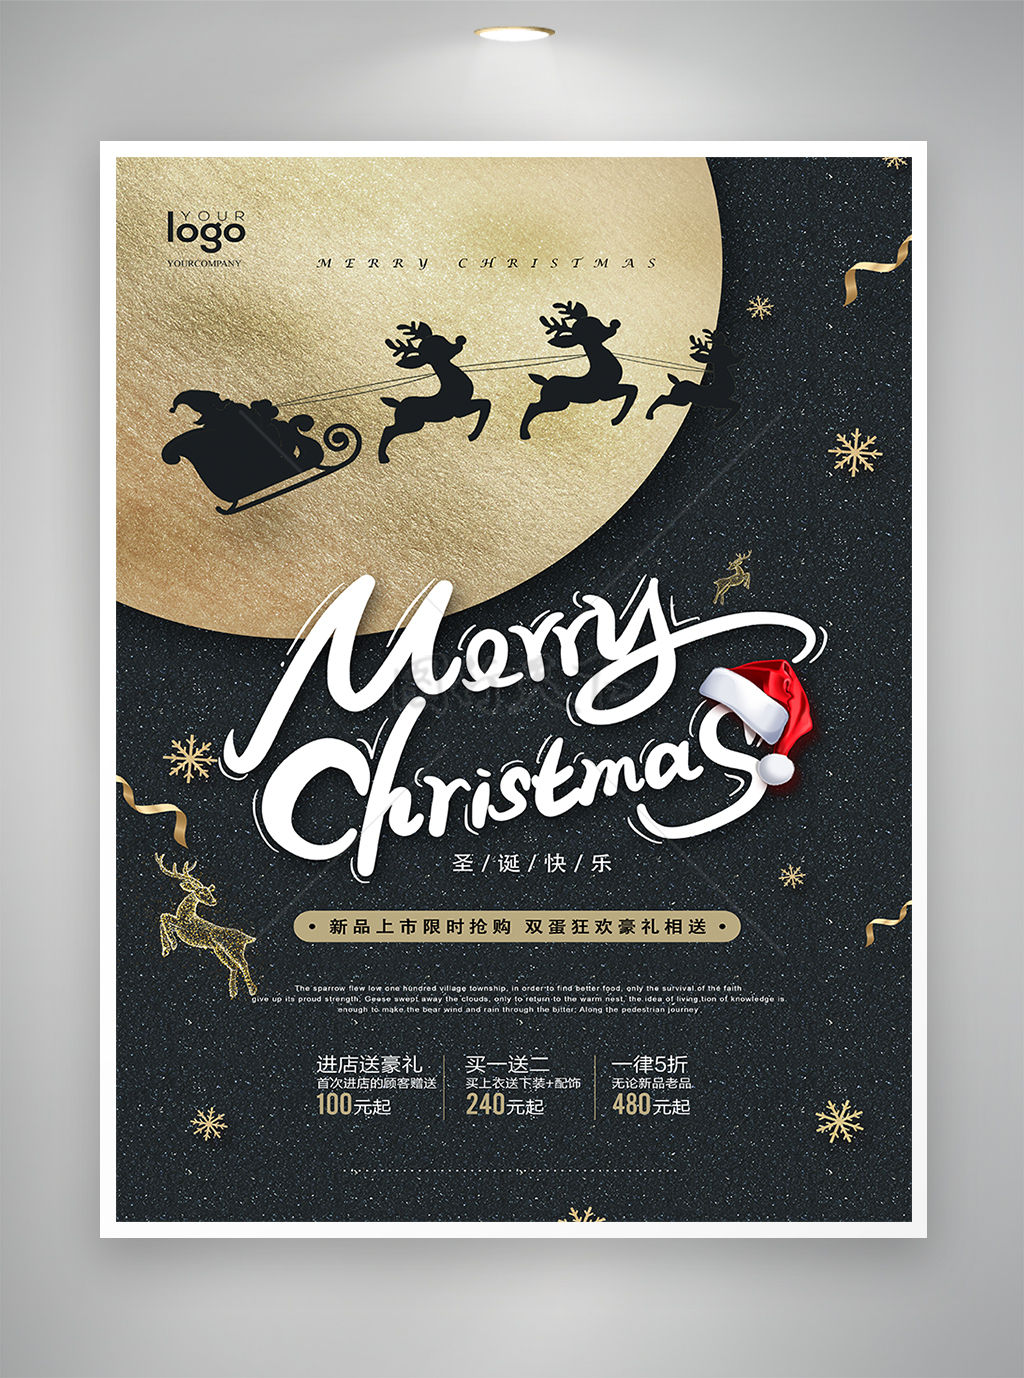 黑金风圣诞节优惠促销宣传海报